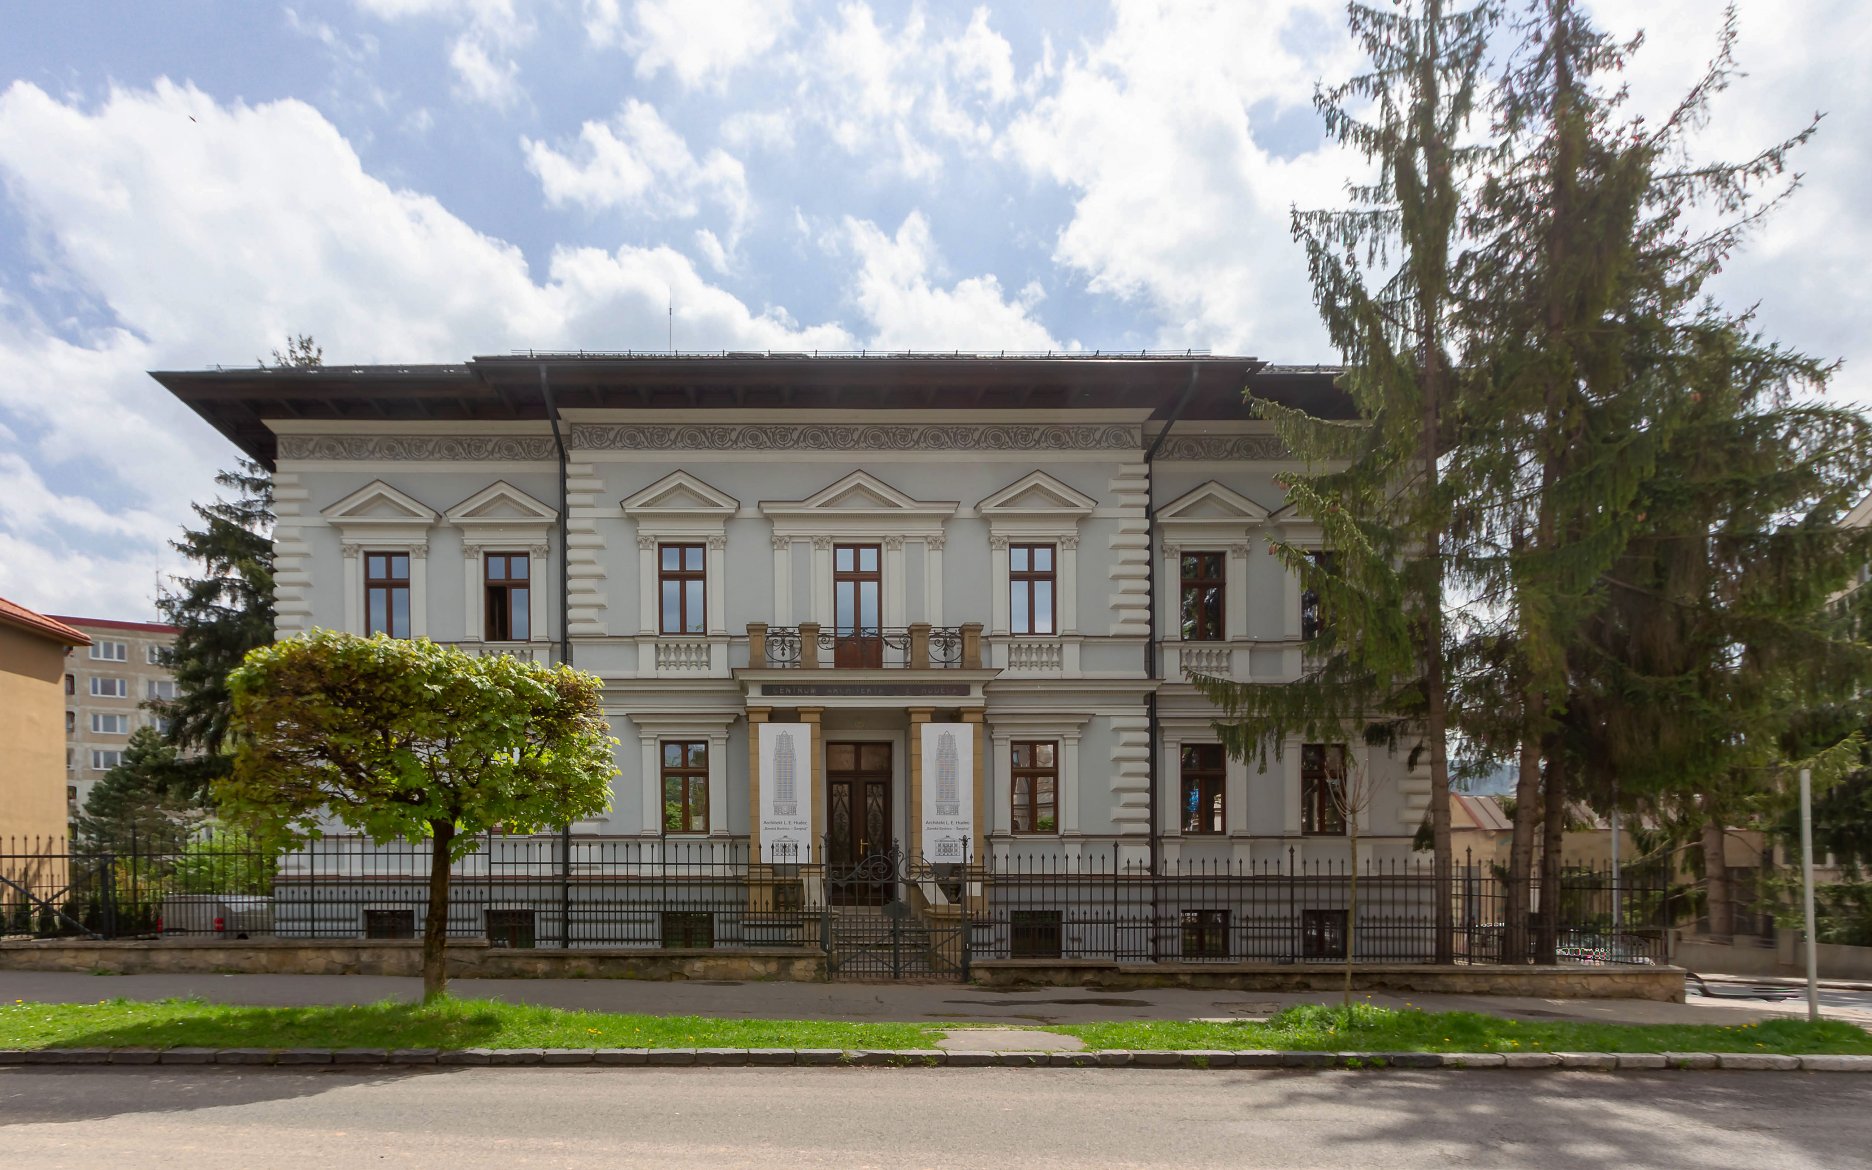 Späthova vila na Skuteckého ulici 22, v Banskej Bystrici. Stála expozícia L. E. Hudeca sa nachádza v novozrekonštruovanom podkroví.